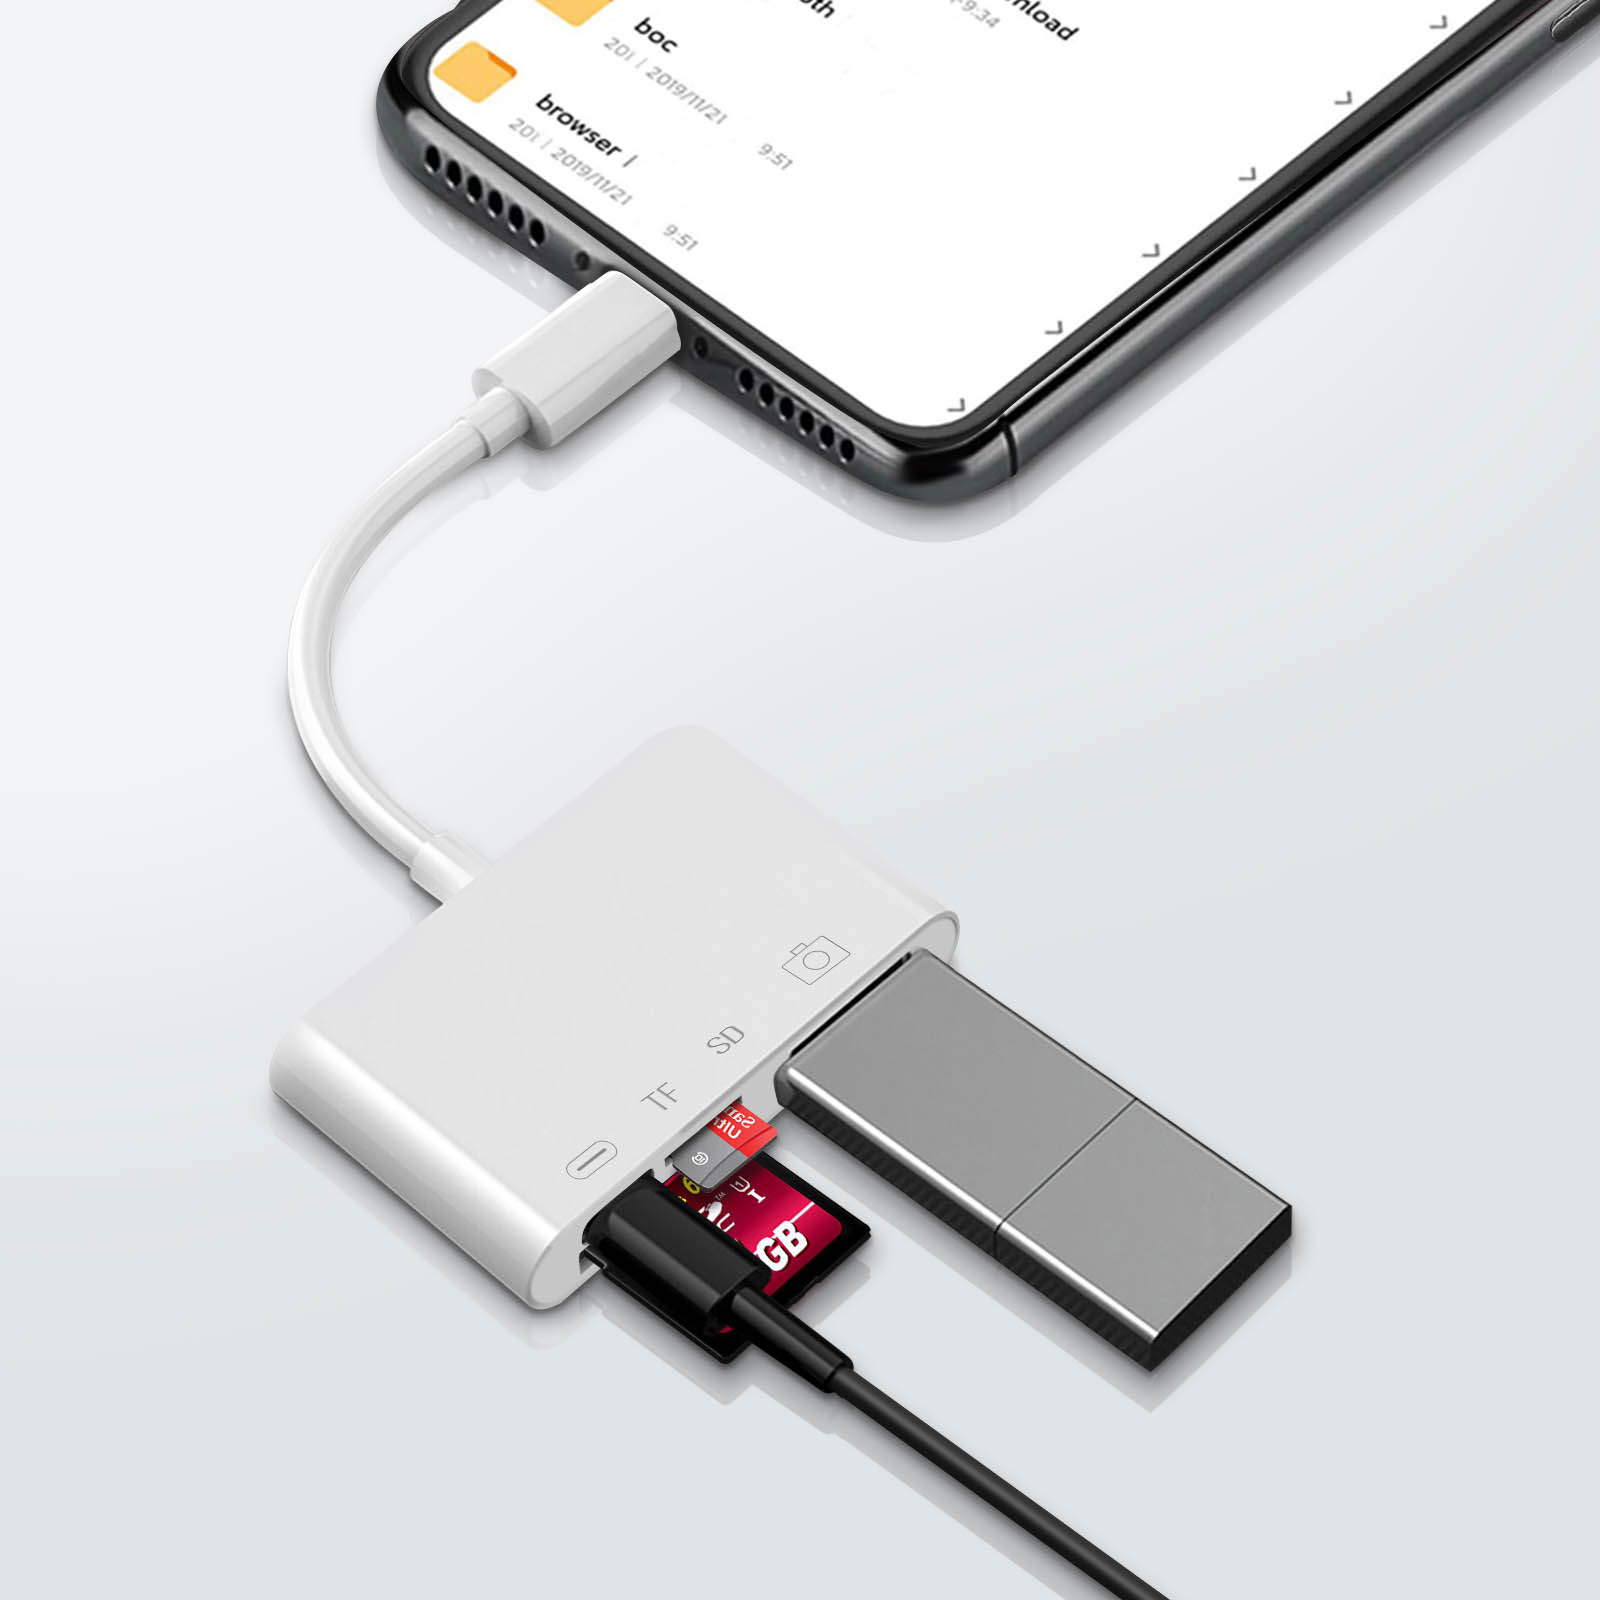 Lecteur carte SD iPhone / iPad, Adaptateur Lightning vers USB